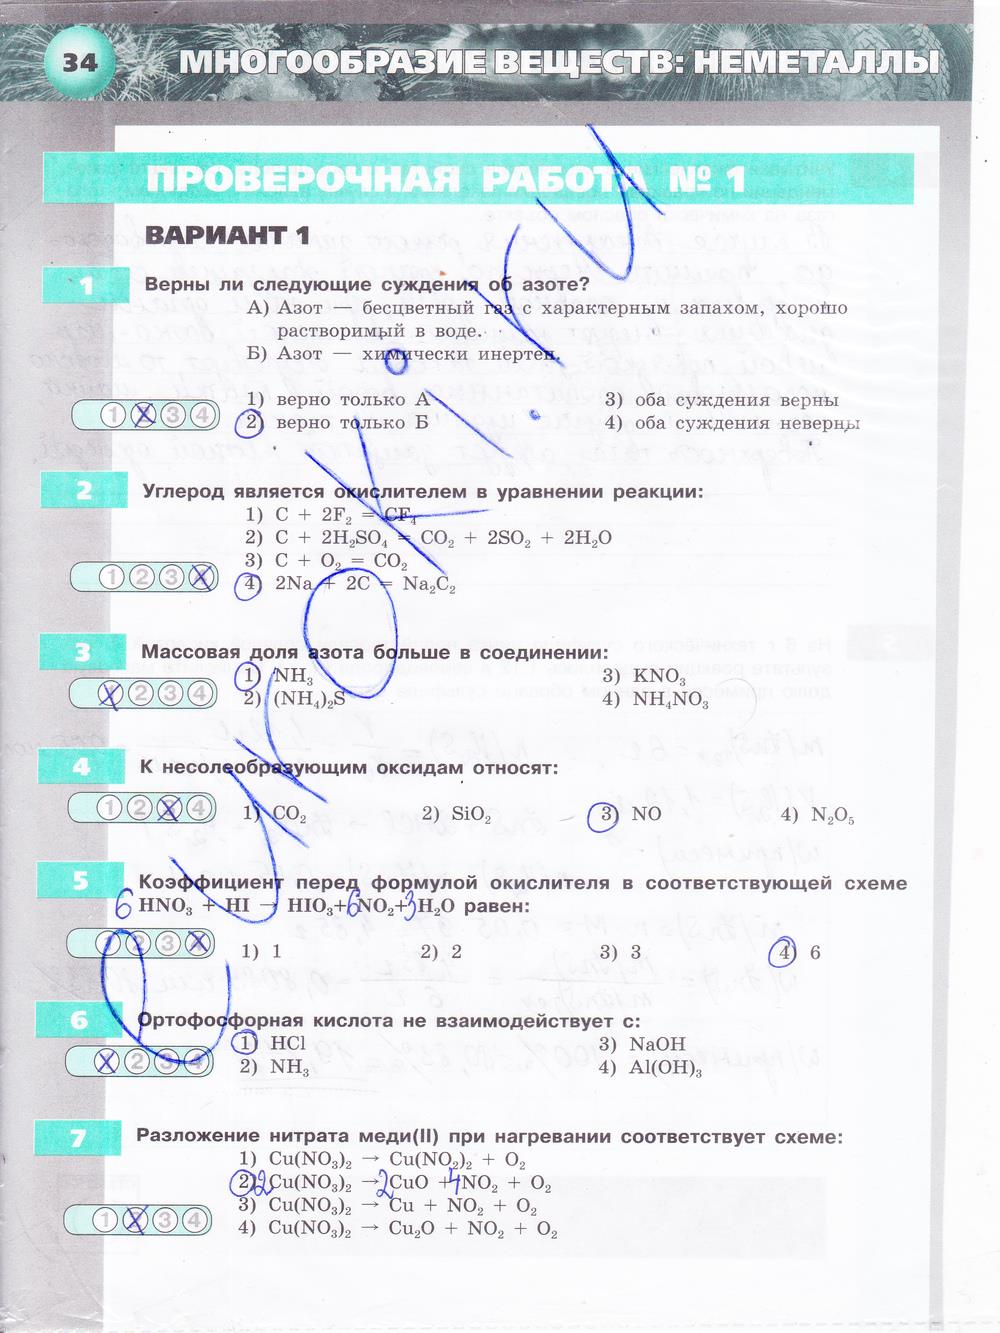 гдз 9 класс тетрадь-экзаменатор страница 34 химия Бобылева, Бирюлина